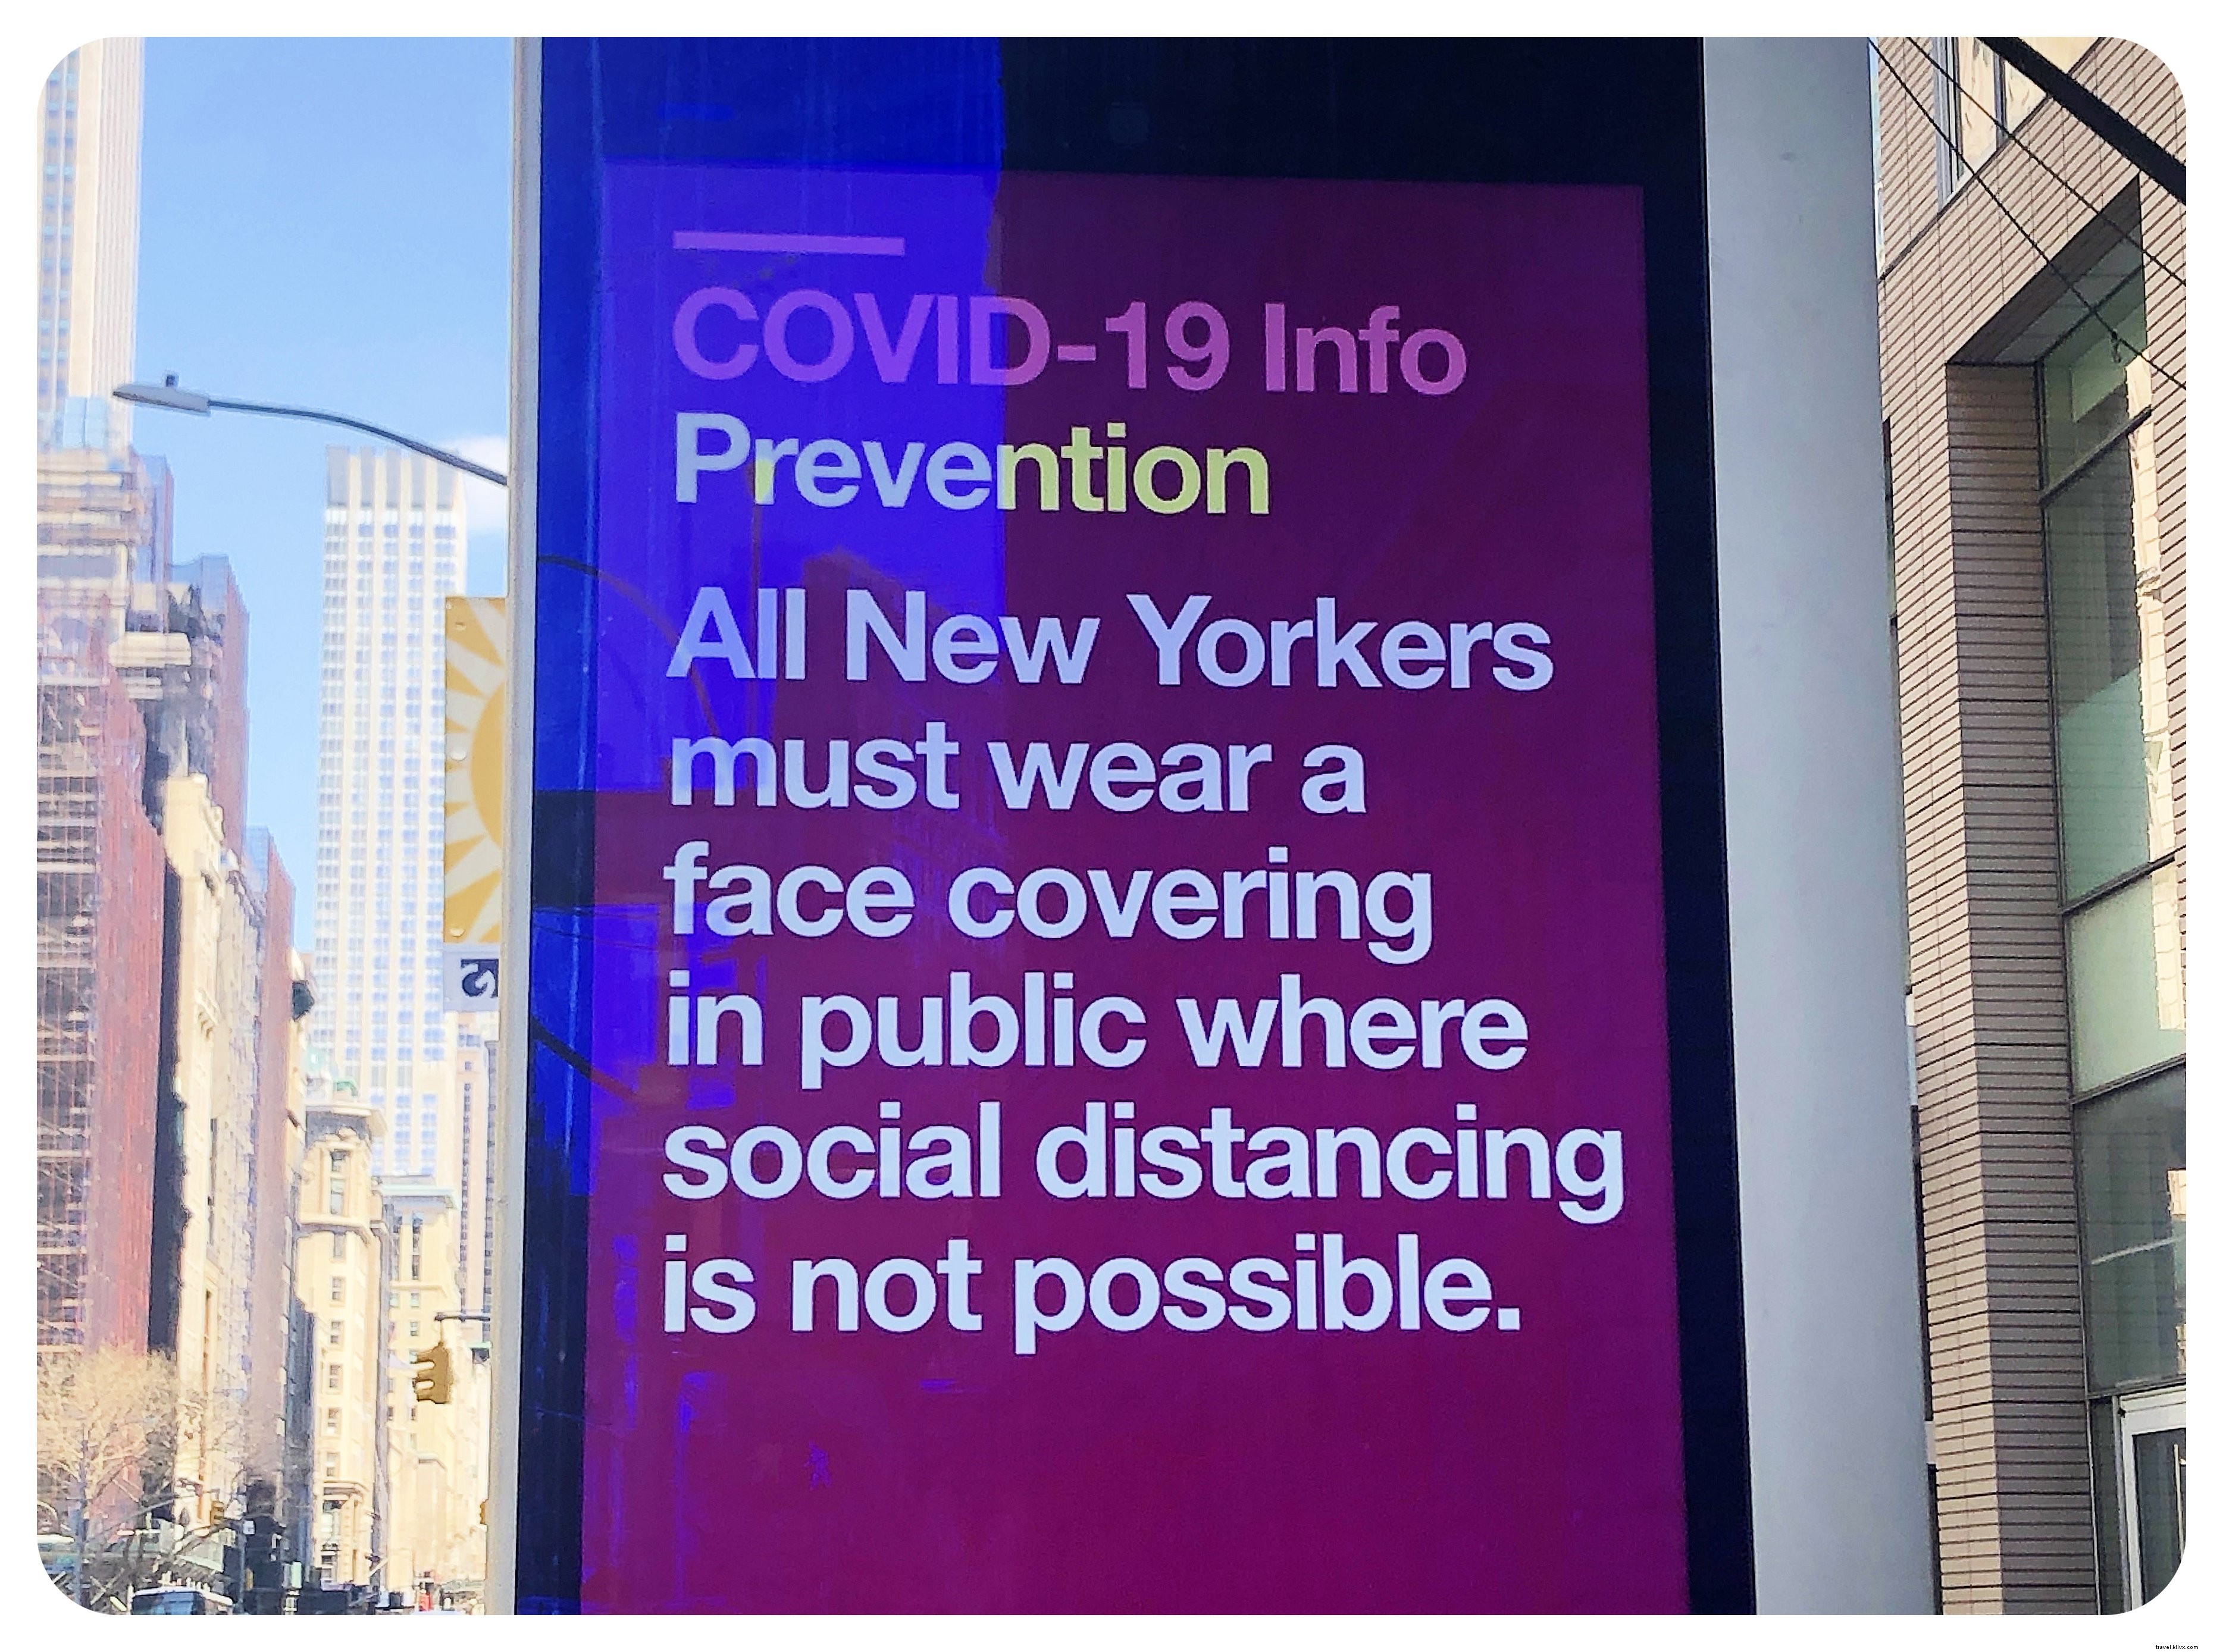 Qu est-ce que c est que de vivre à New York pendant COVID-19